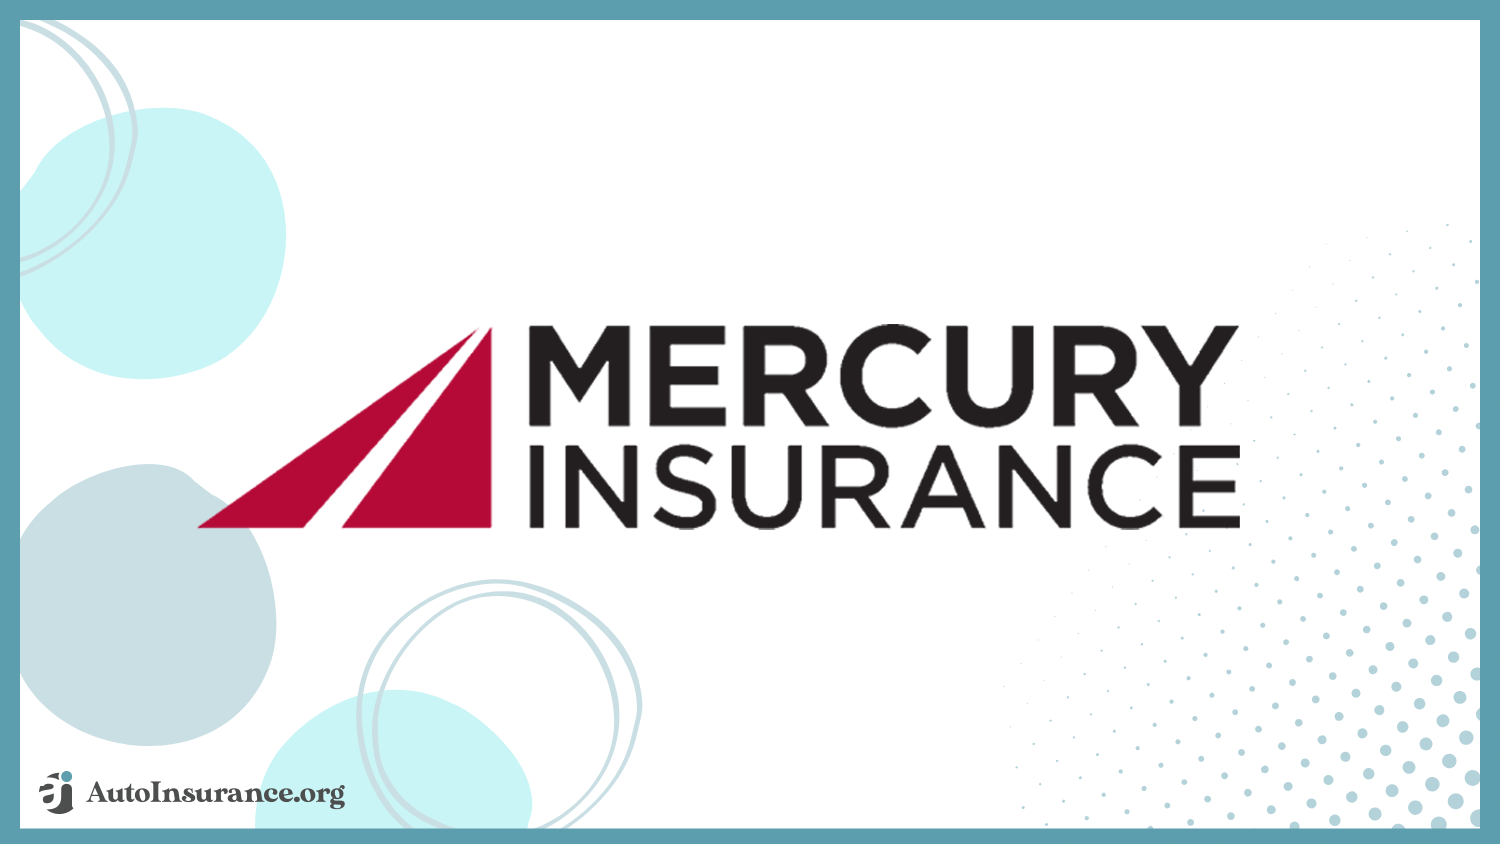 Mercury Insurance: Cheap Auto Insurance for SSI Recipients